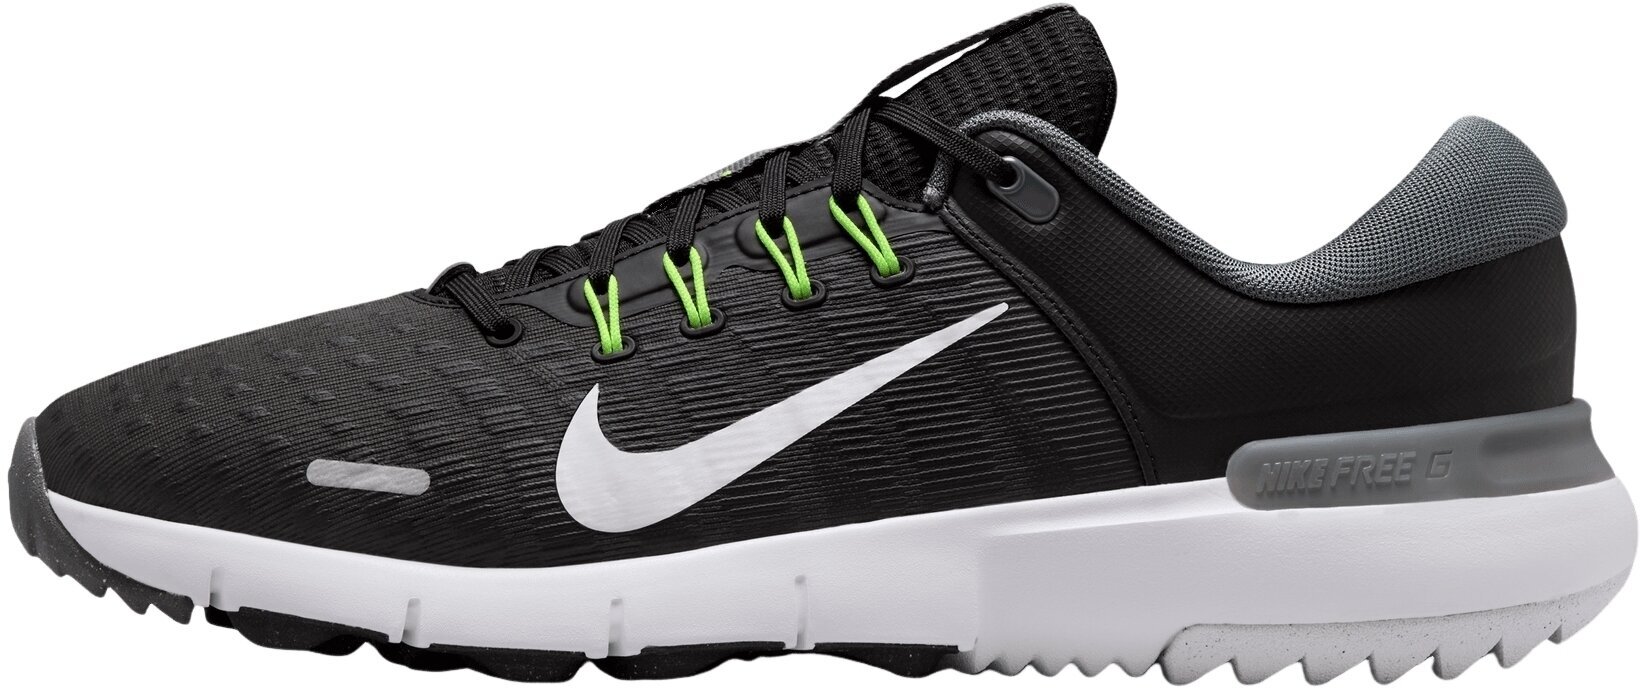 Golfsko til mænd Nike Free Golf Unisex Shoes Black/White/Iron Grey/Volt 47,5